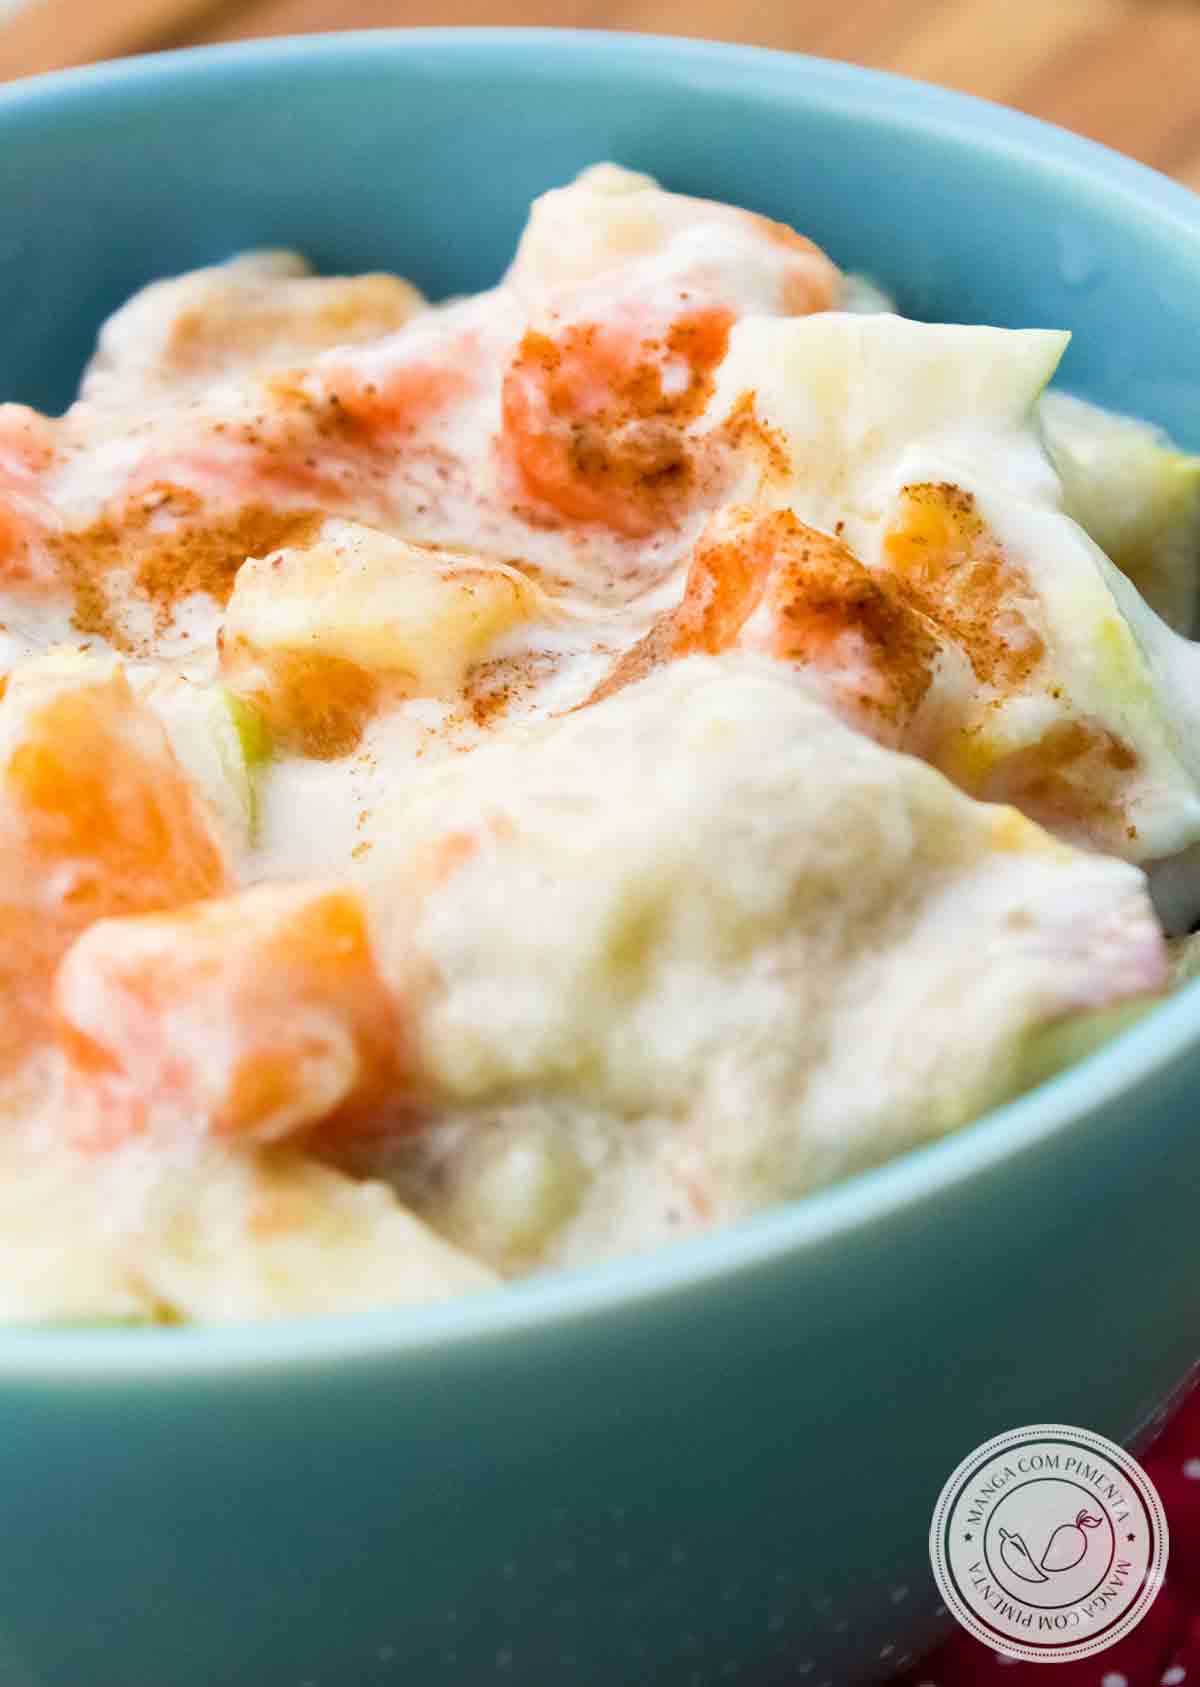 Receita de Salada de Frutas com Iogurte - prepare uma sobremesa deliciosa no Verão e que faz bem!